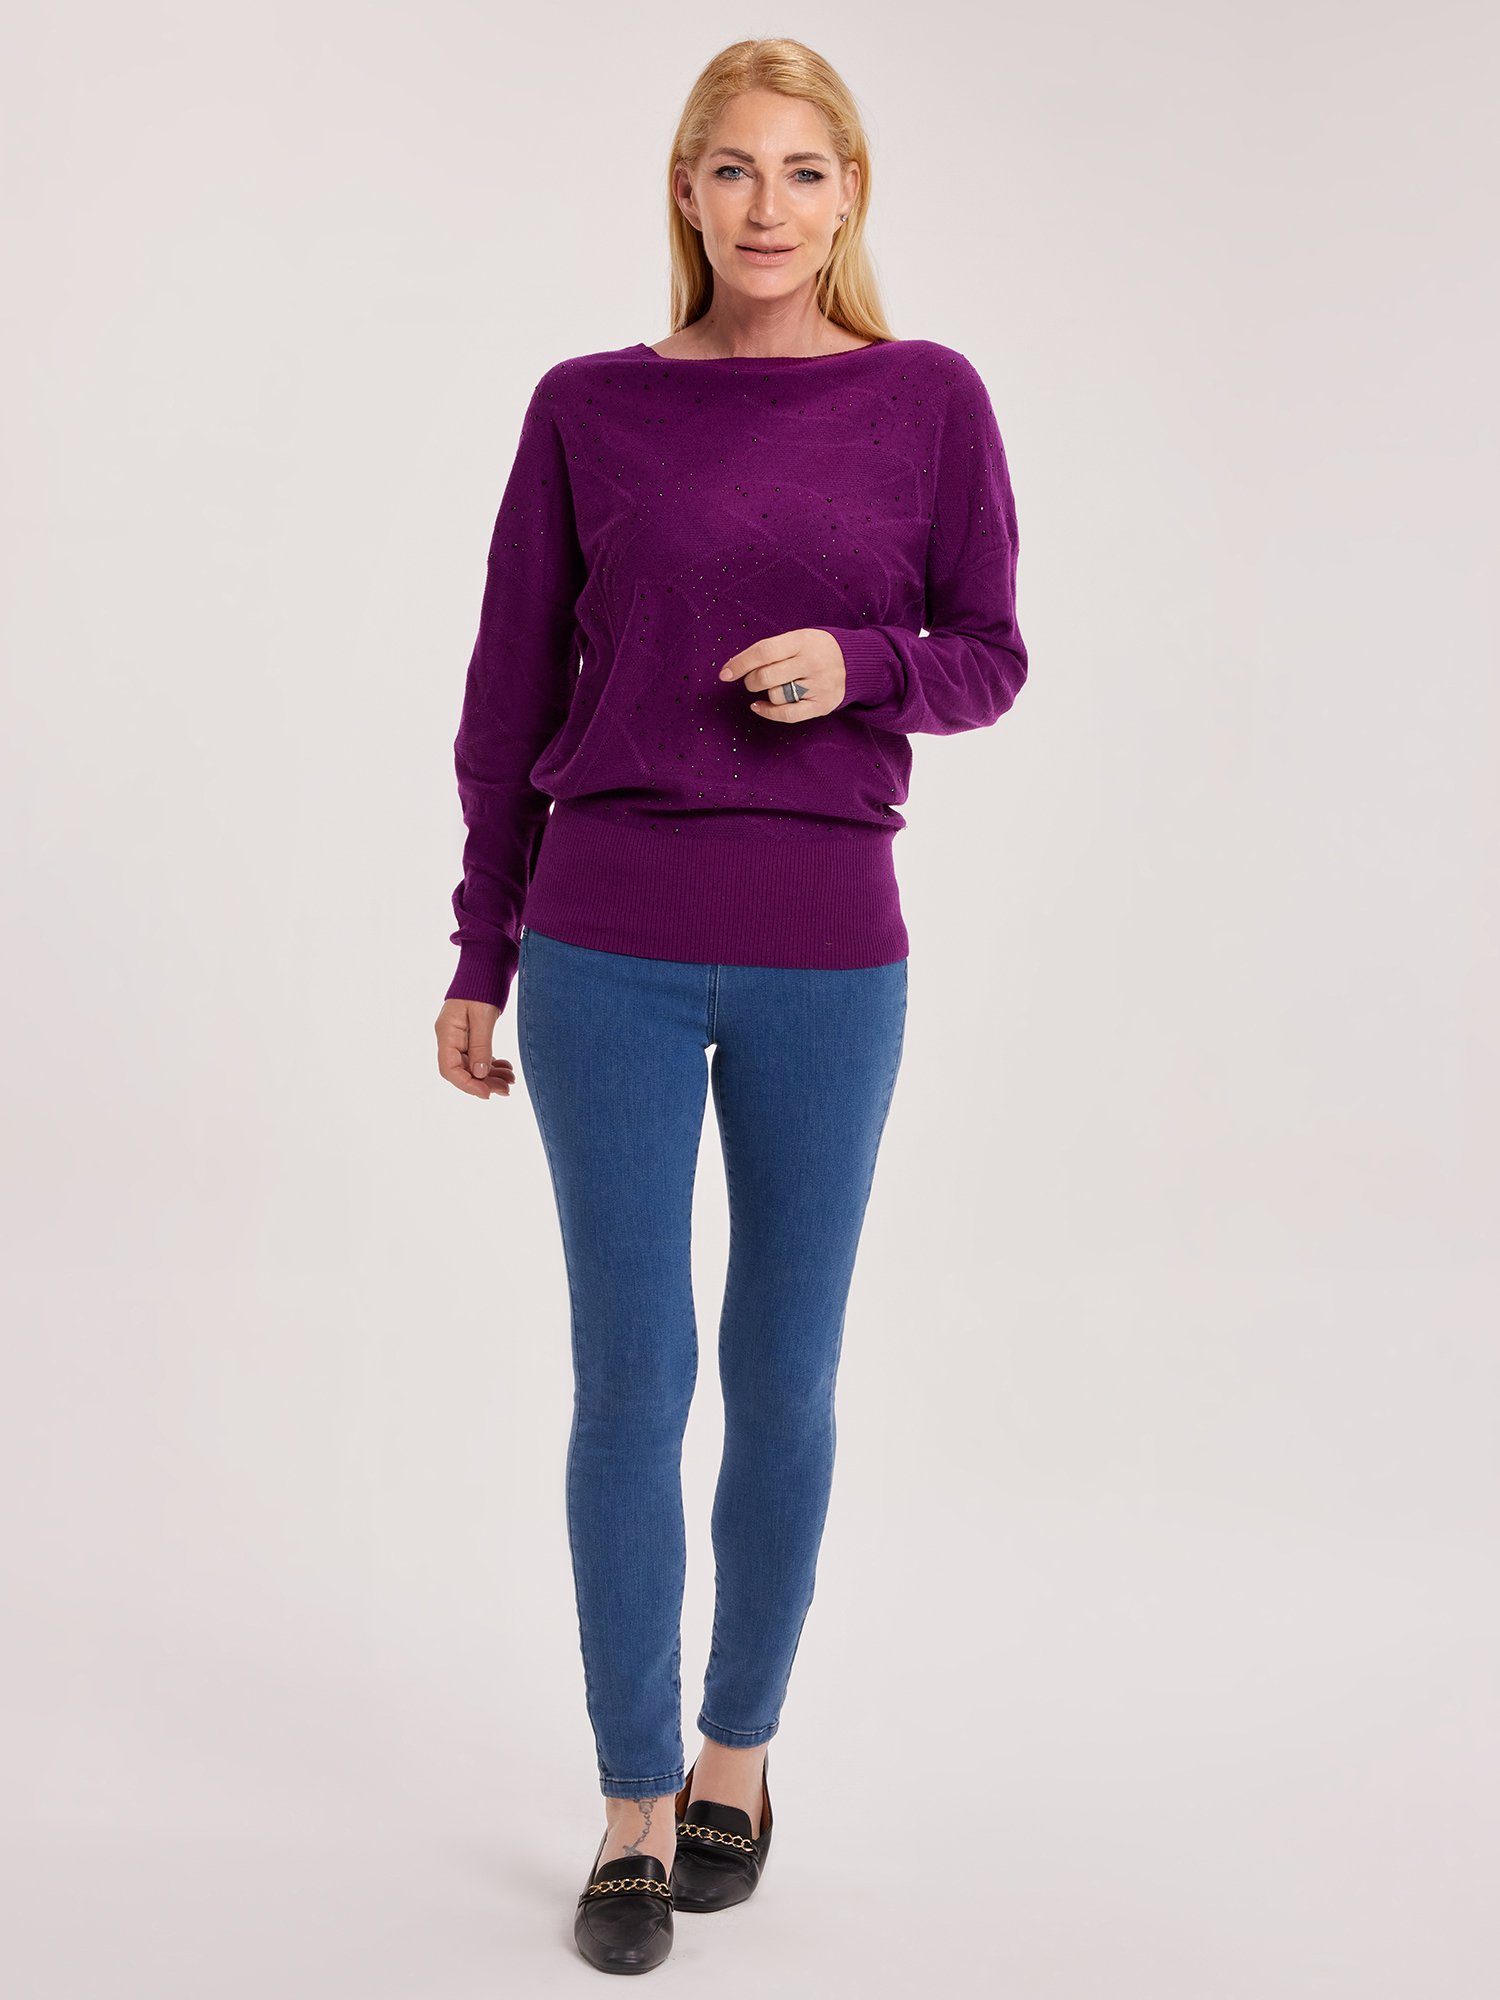 Sarah Kern Strickpullover Sweater figurumspielend mit Ziersteinen verziert